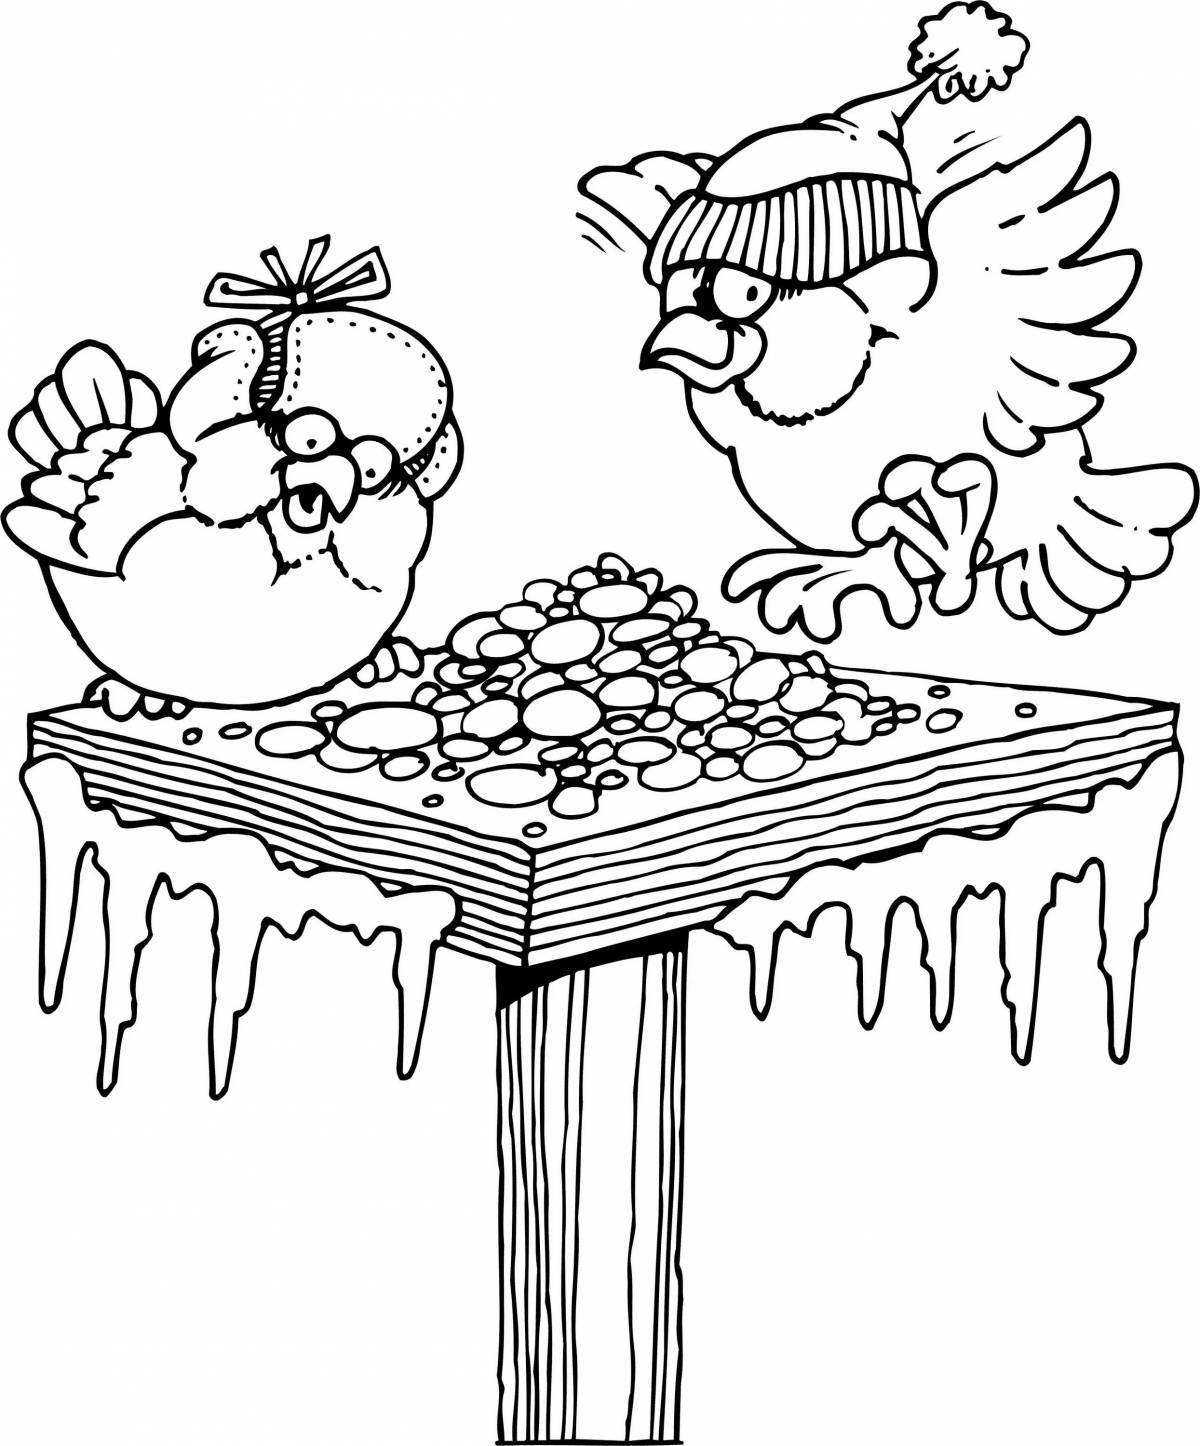 Анимация «покорми птиц зимой» для детей